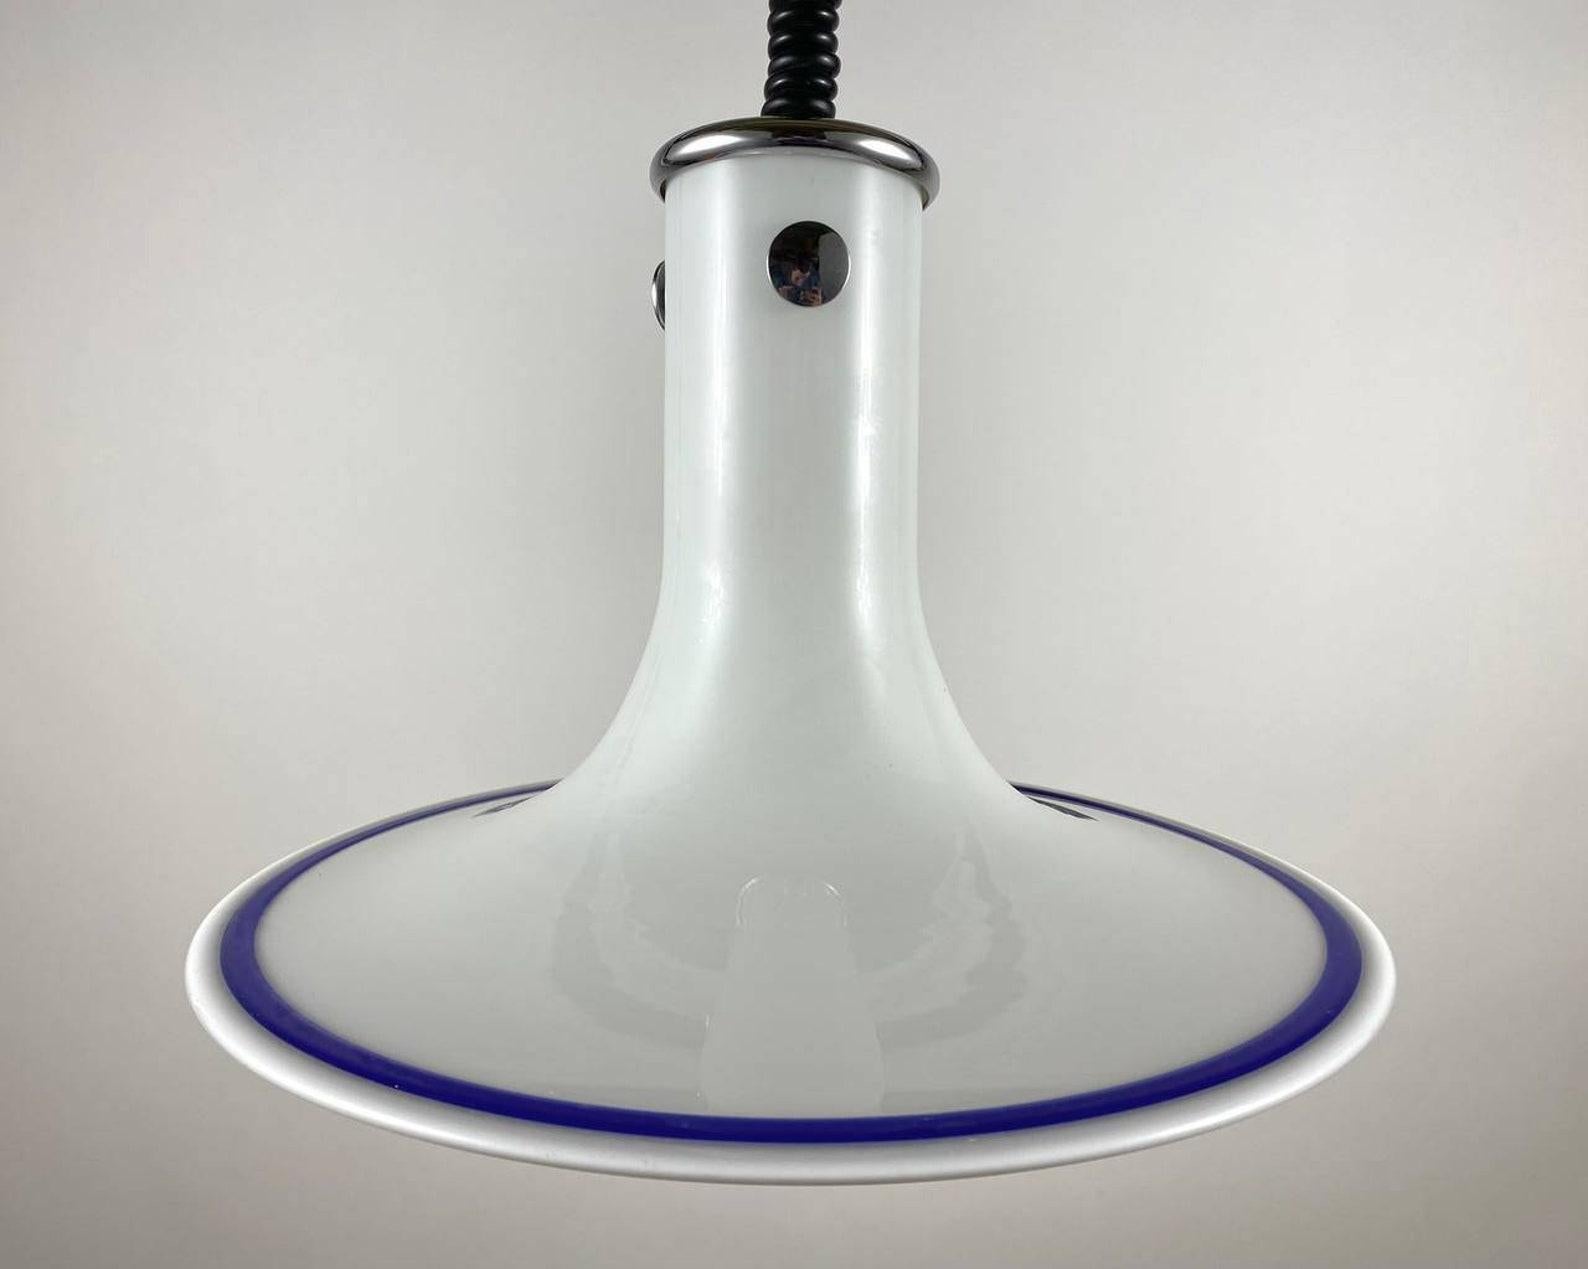 German Peill and Putzler Designer Ceiling Lamp Vintage Adjustable Chandelier For Sale